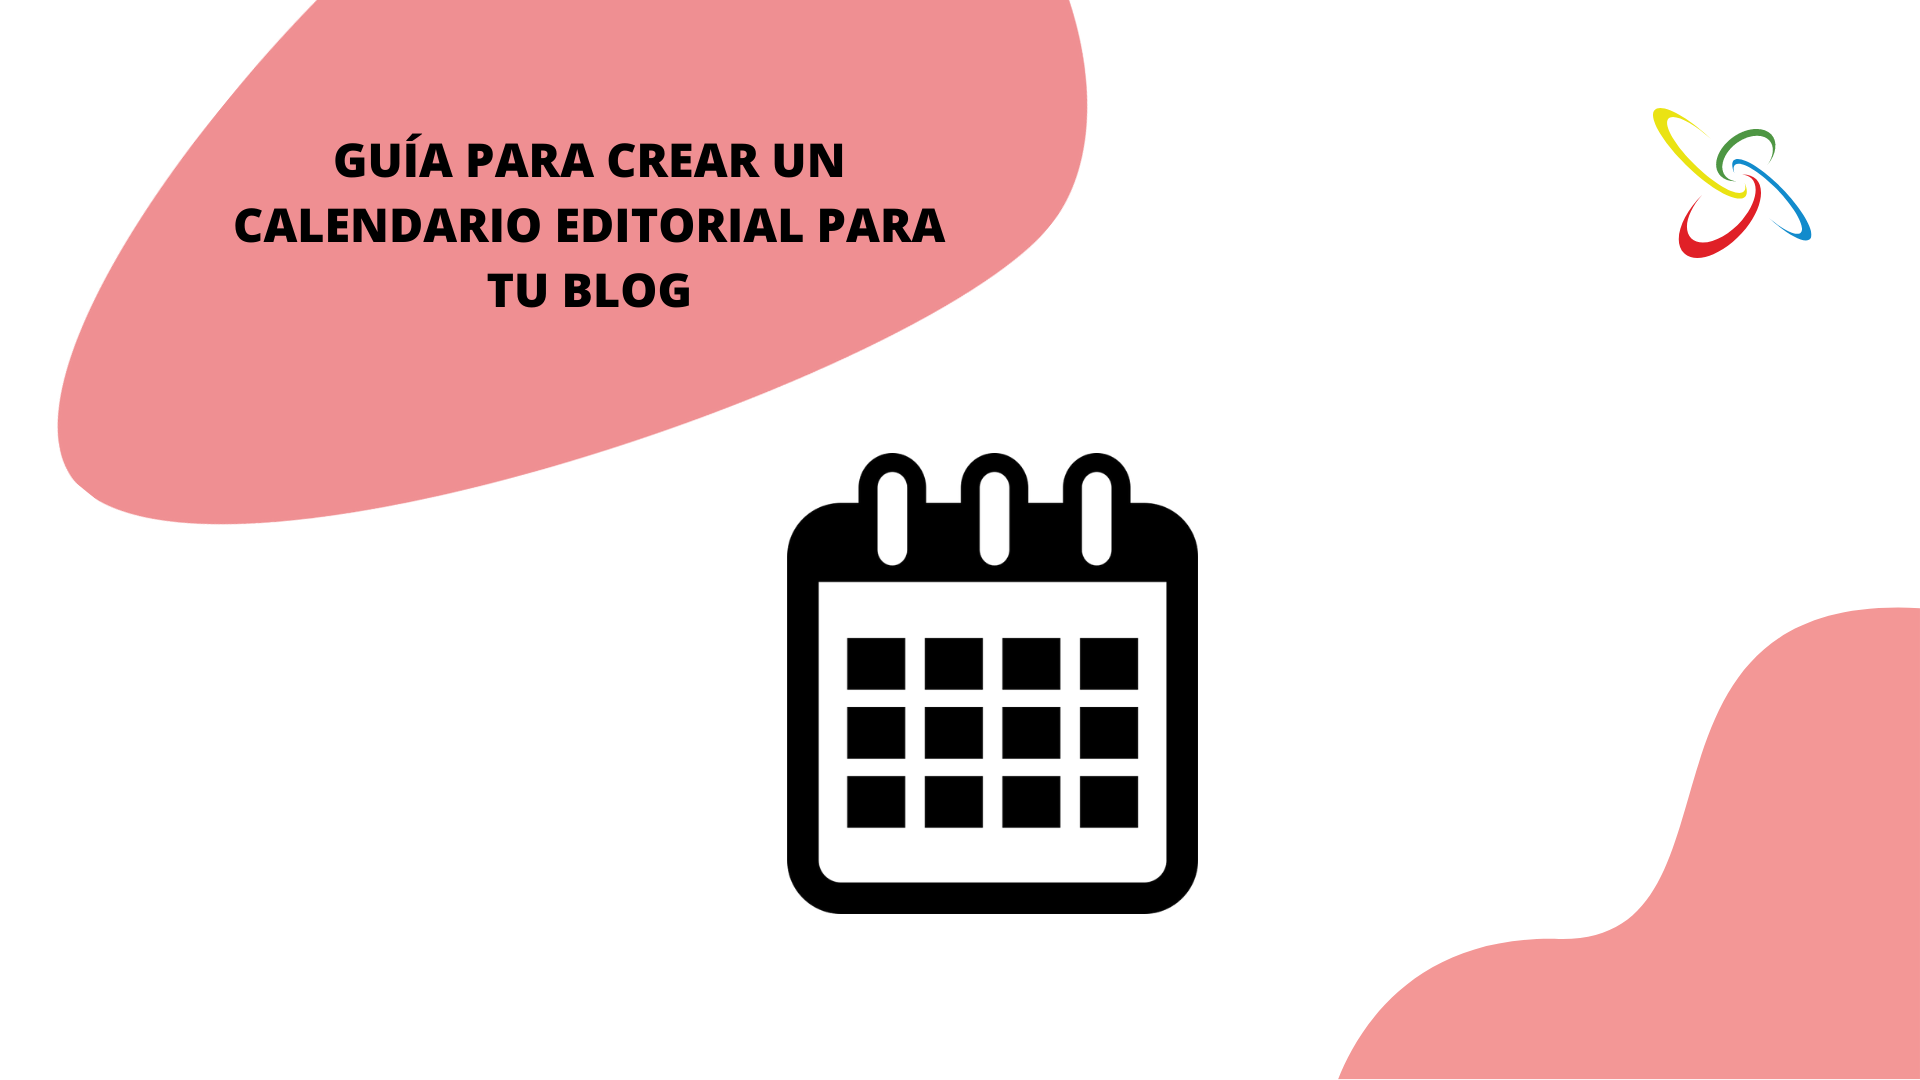 Guía para crear un calendario editorial para tu blog